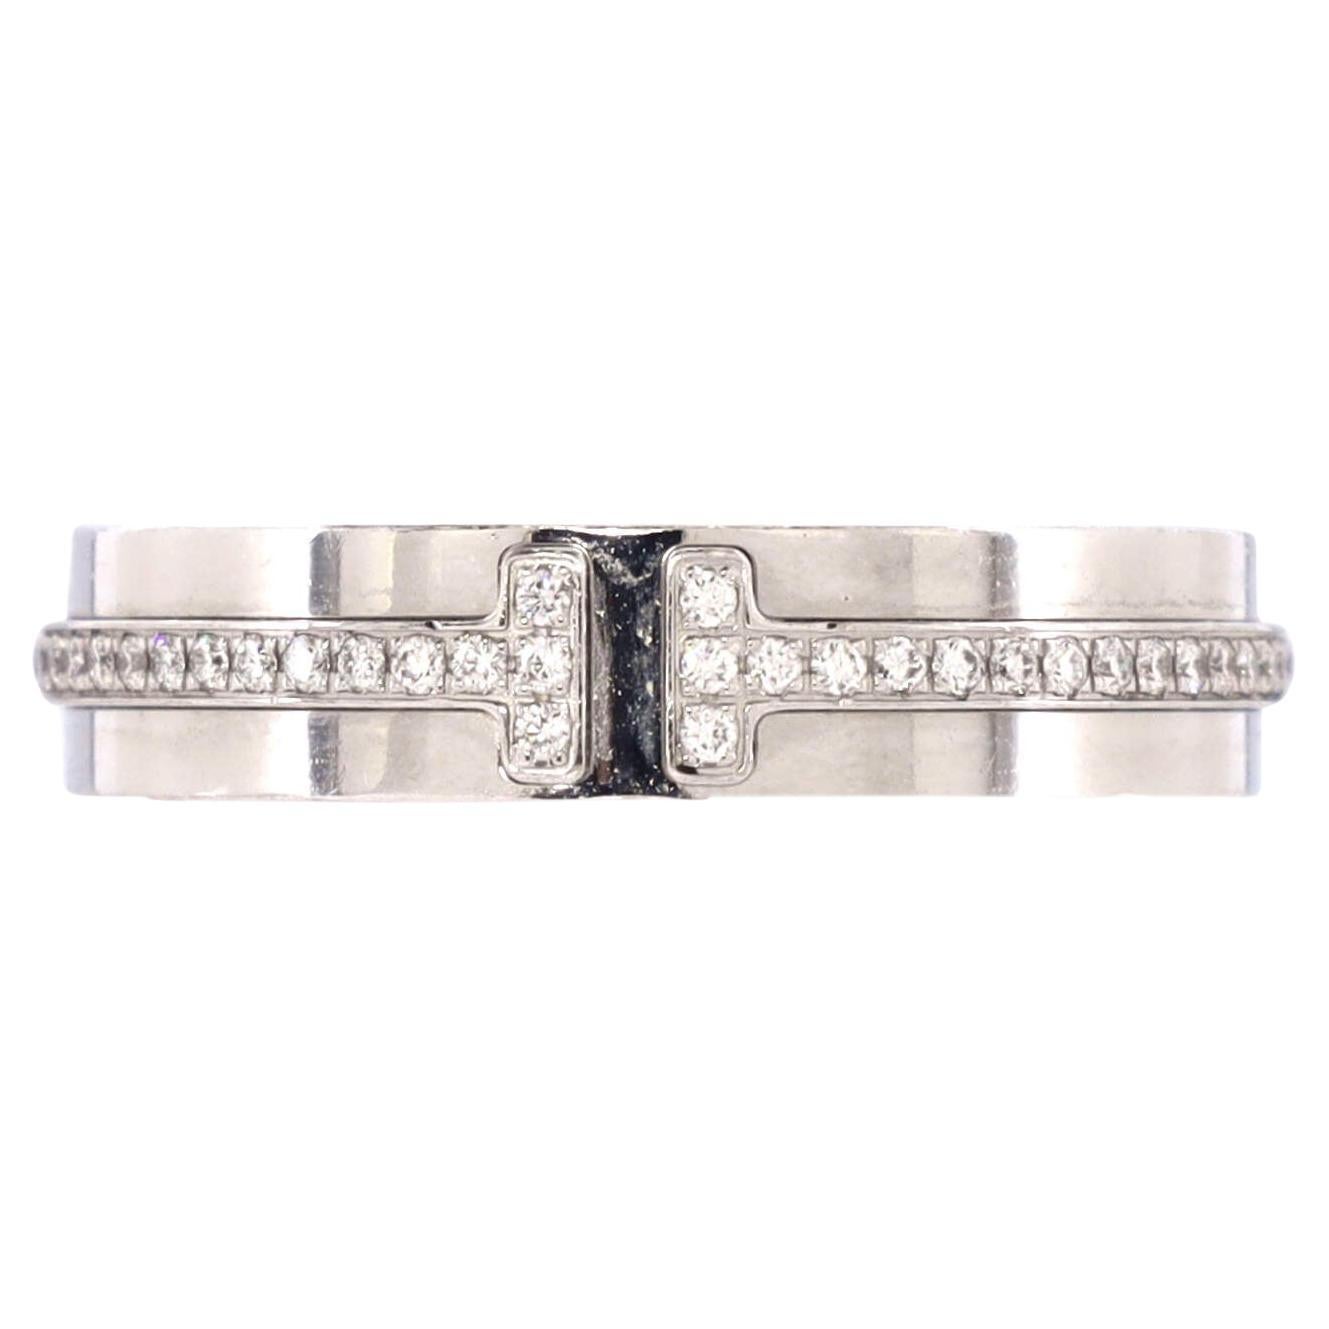 Tiffany & Co. Tiffany T Ring 18k White Gold and Diamonds Narrow